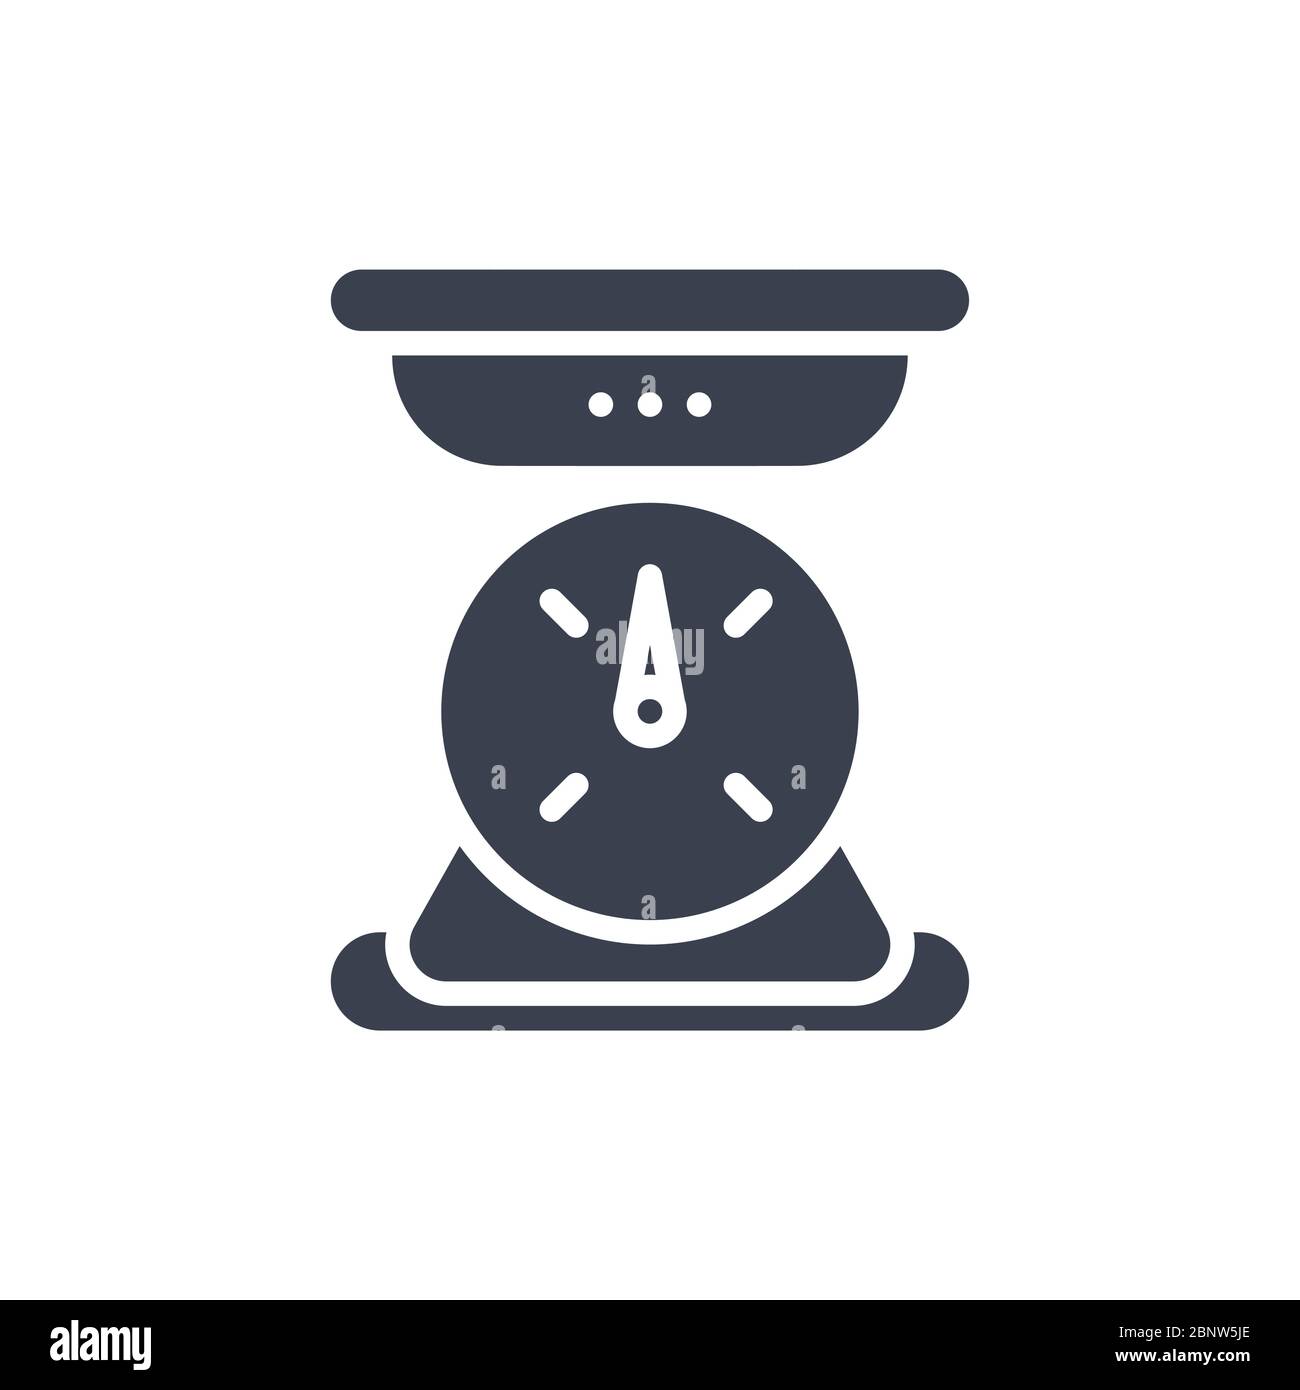 Illustrazione vettoriale di un'icona o logo della scala di peso con colore nero e stile di disegno glifo Illustrazione Vettoriale